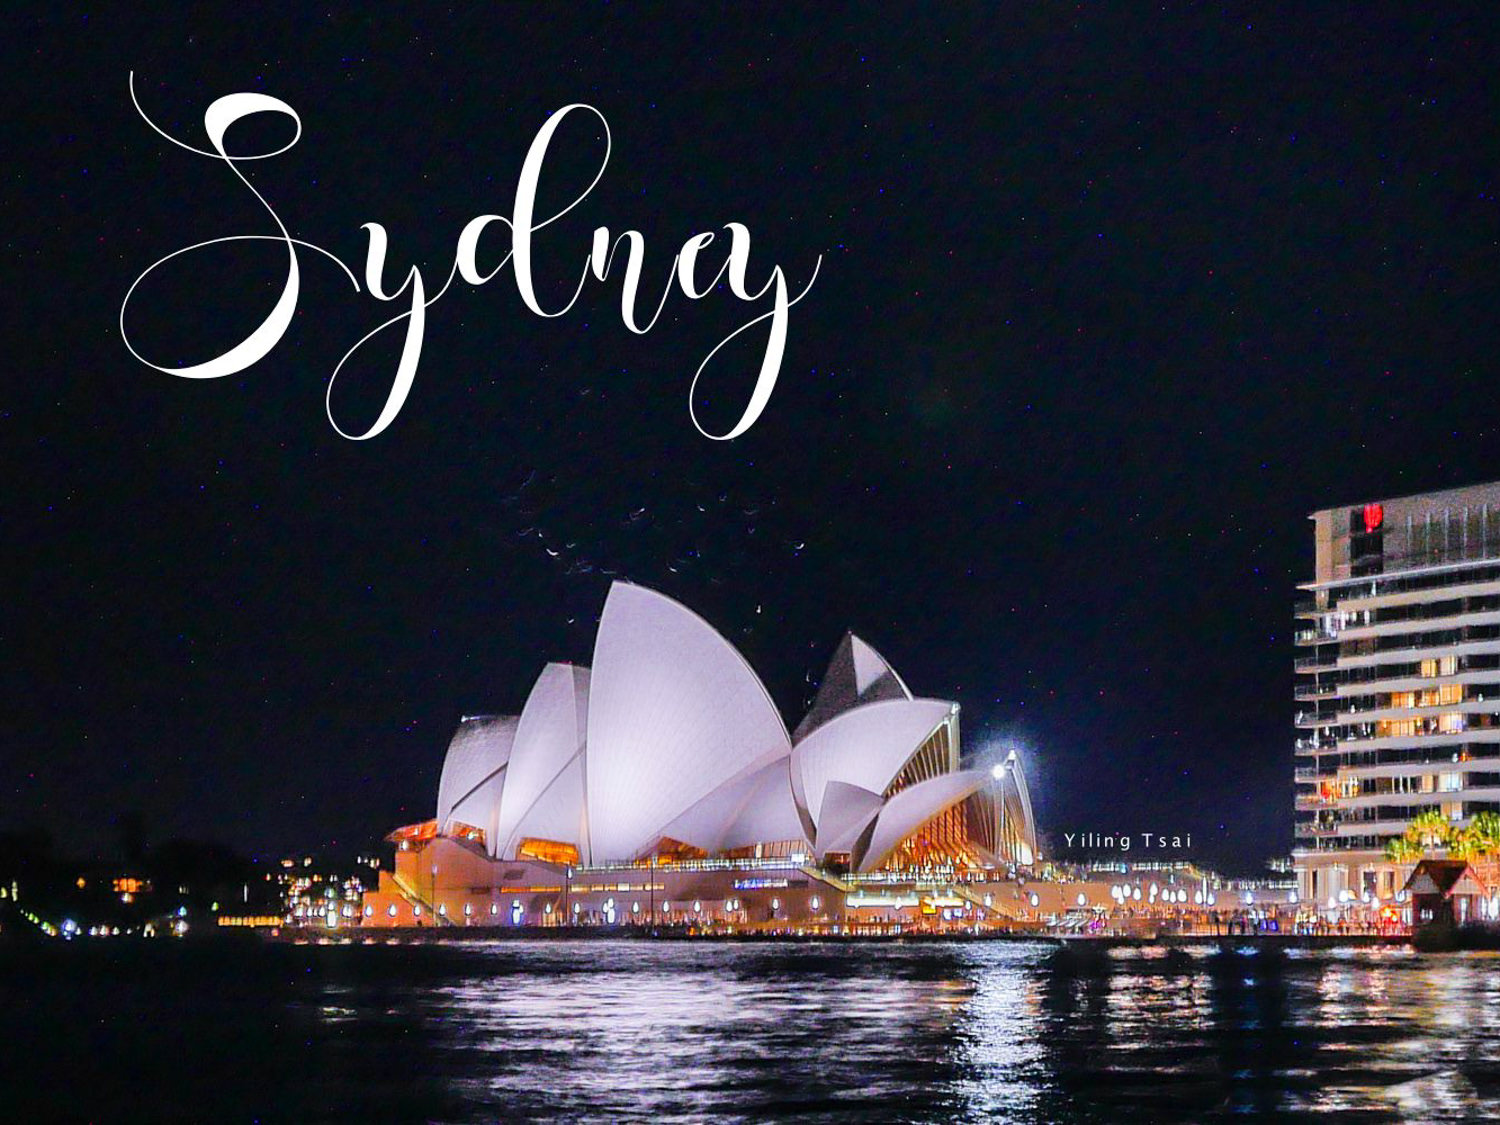 澳洲雪梨遊船推薦 玻璃船晚餐欣賞雪梨歌劇院雪梨港灣大橋夜景